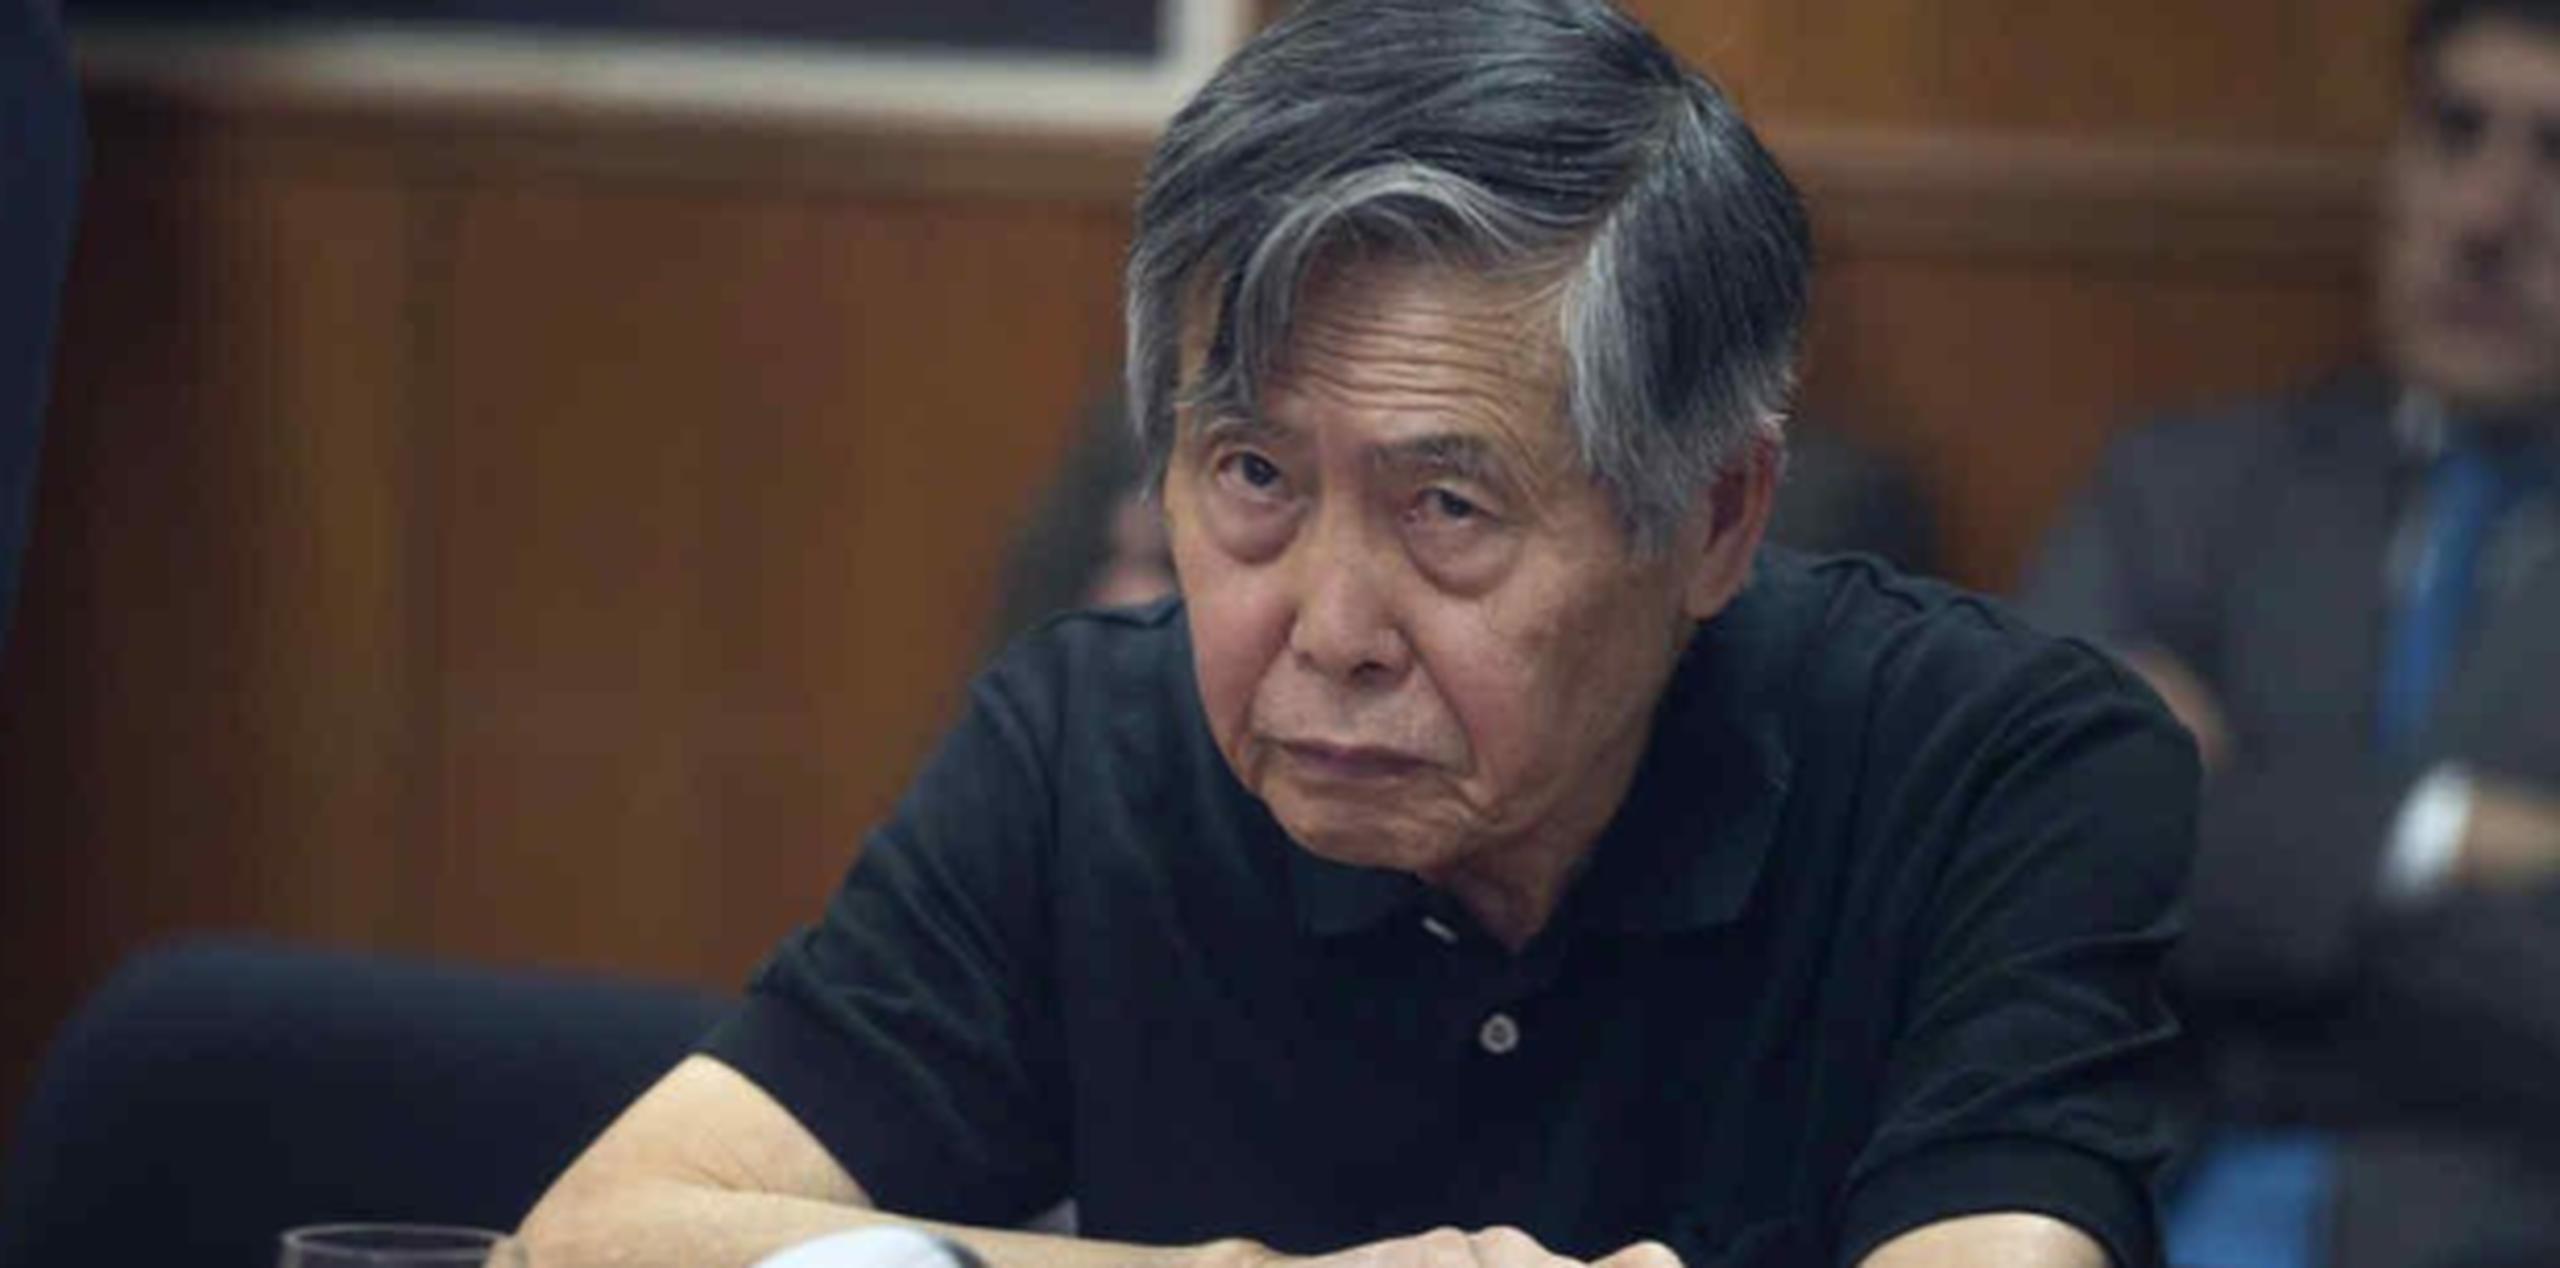 El expresidente Fujimori cumple desde 2009 una condena de 25 años de prisión por su autoría mediata en el asesinato de 25 peruanos. (Prensa Asociada)